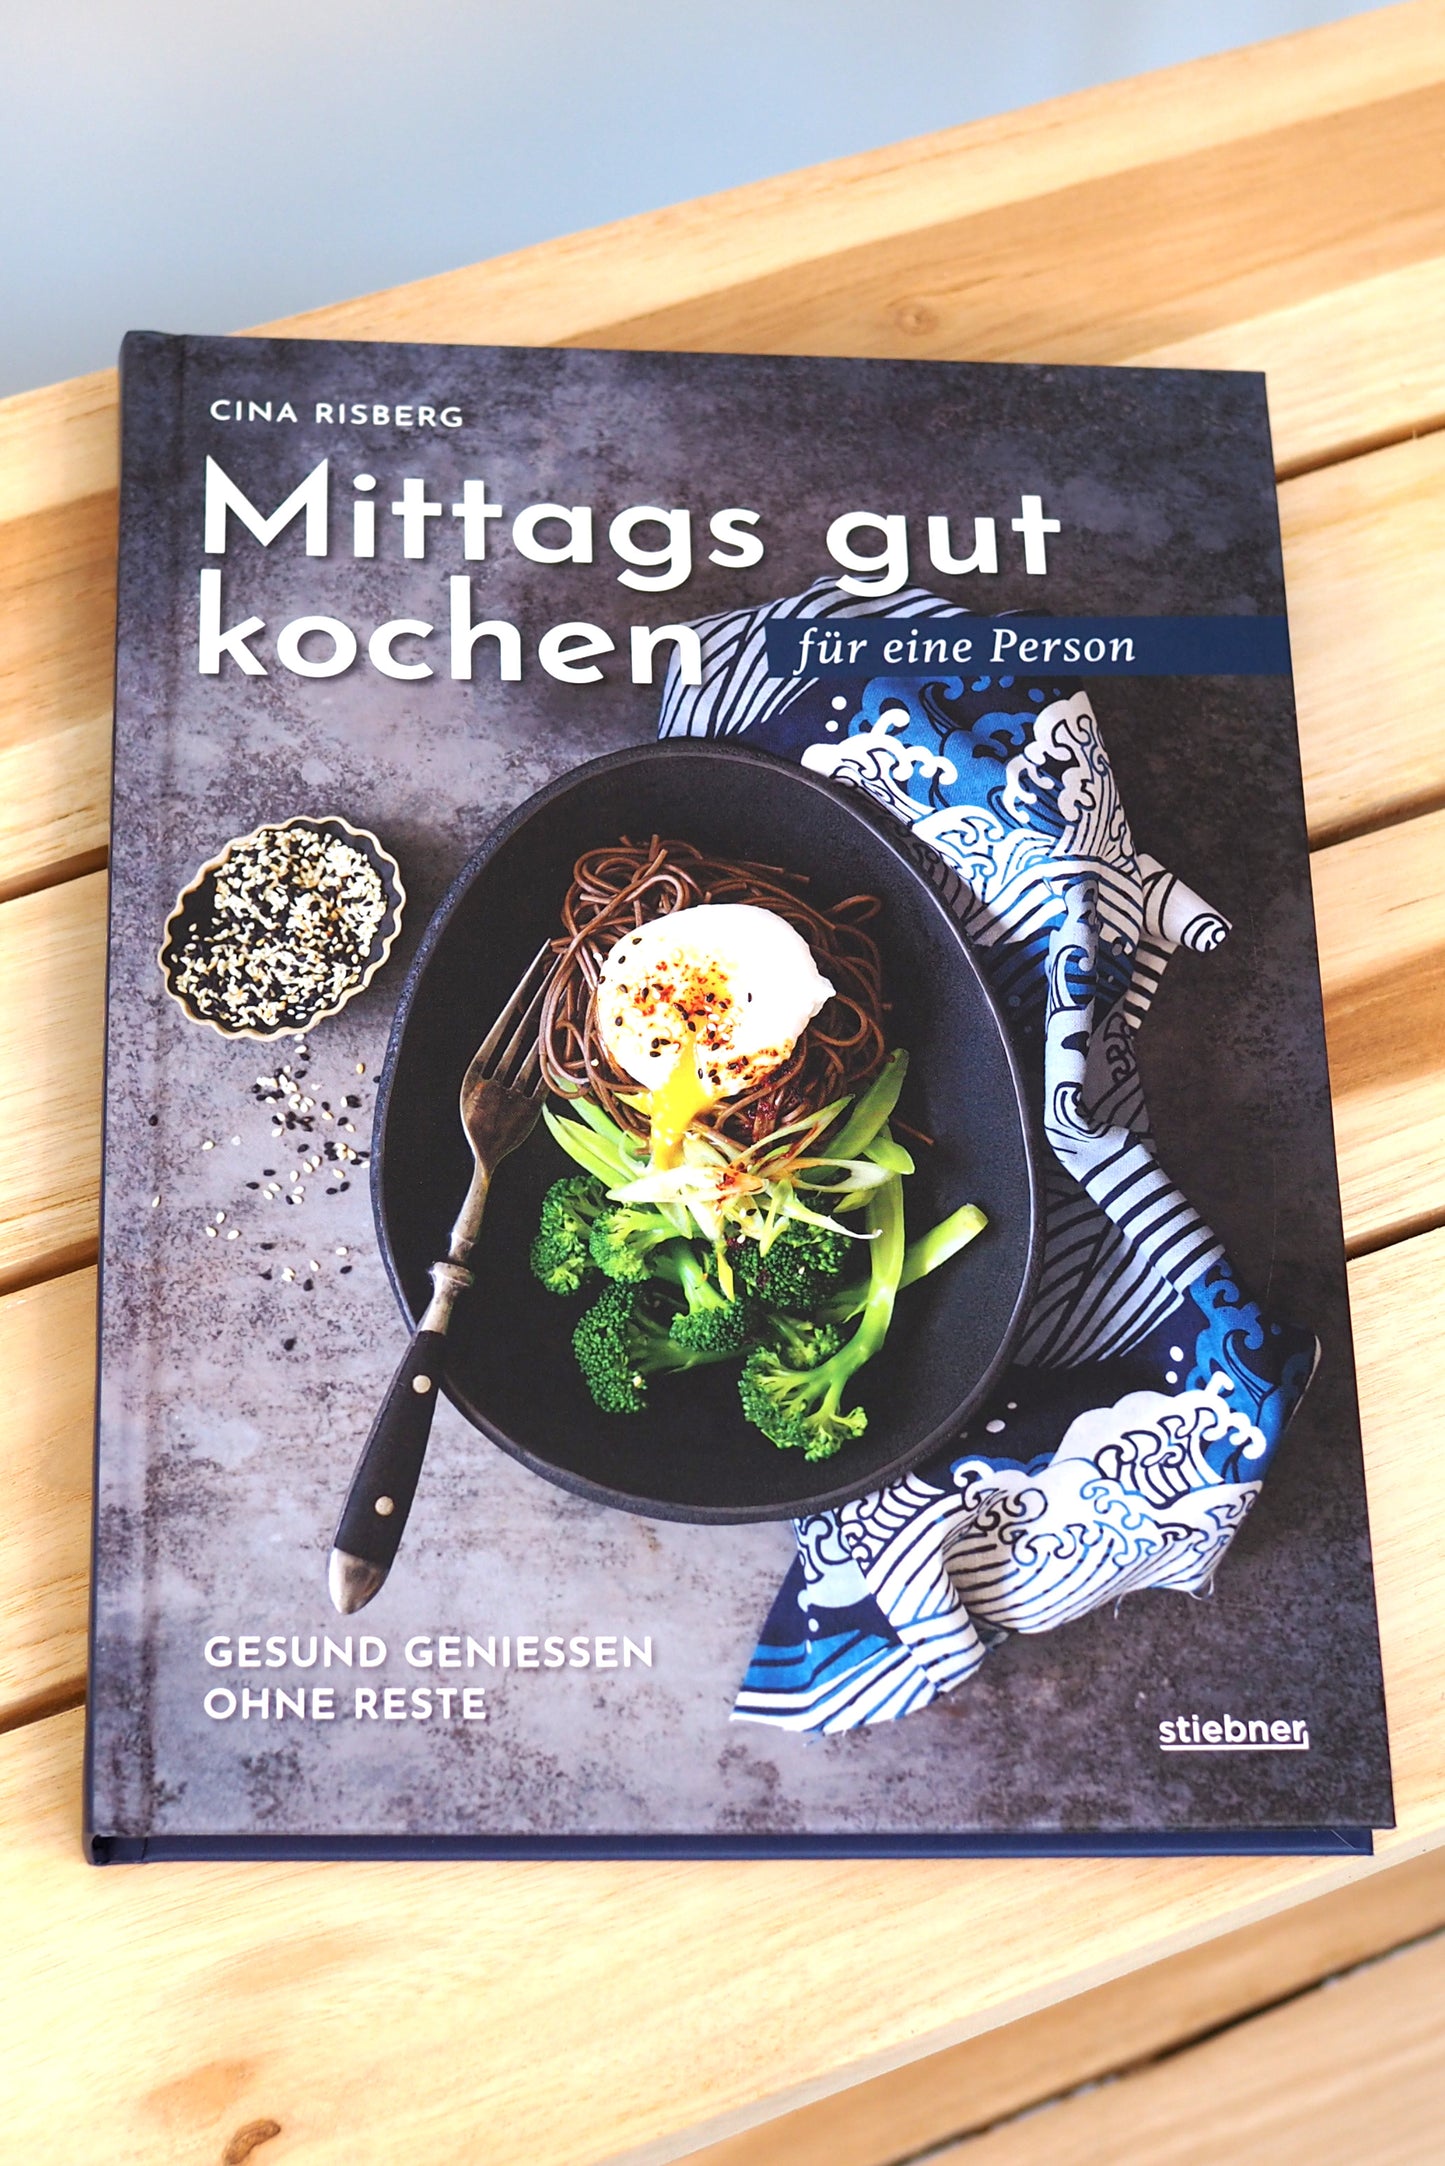 Mittags gut kochen für eine Person by Cina Risberg - German Edition -